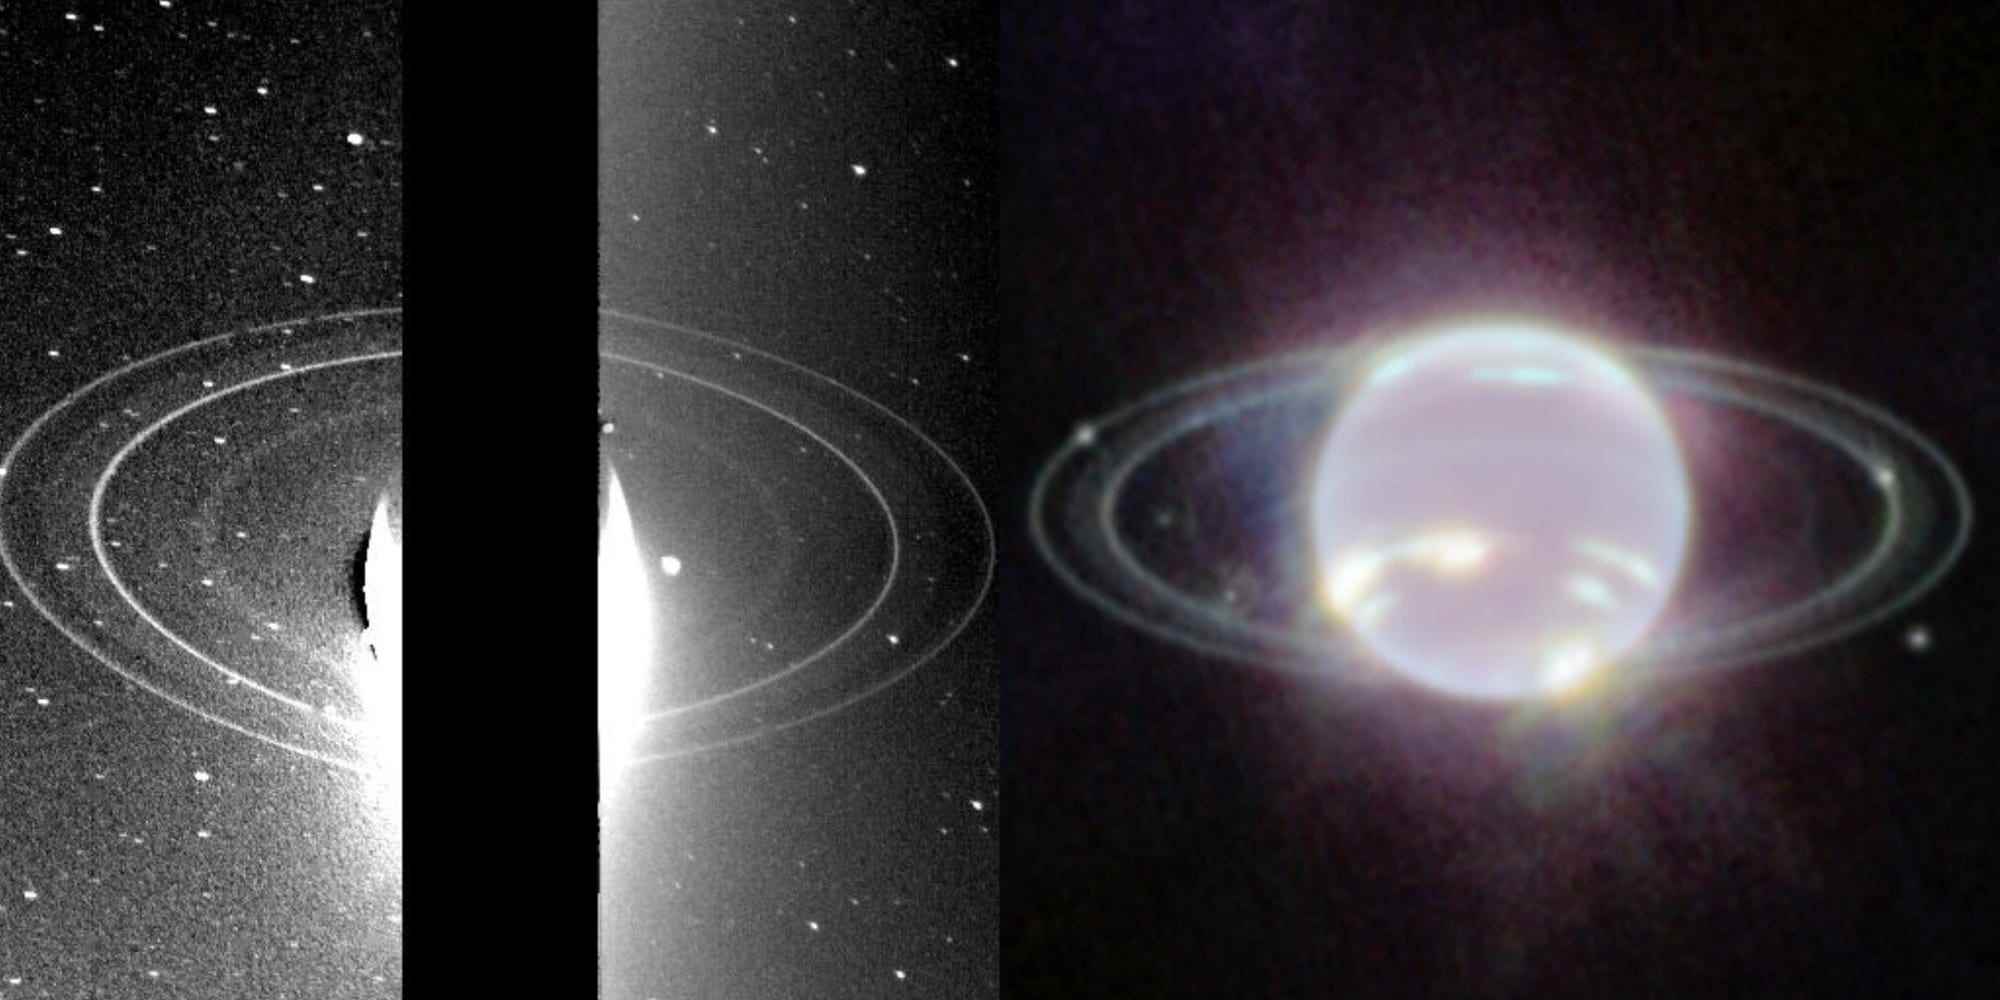 Links ein Bild von Neptuns Ringen, aufgenommen von Voyager 2 im Jahr 1989. Rechts ein Infrarotbild von Neptuns Ringen, aufgenommen von Webb.